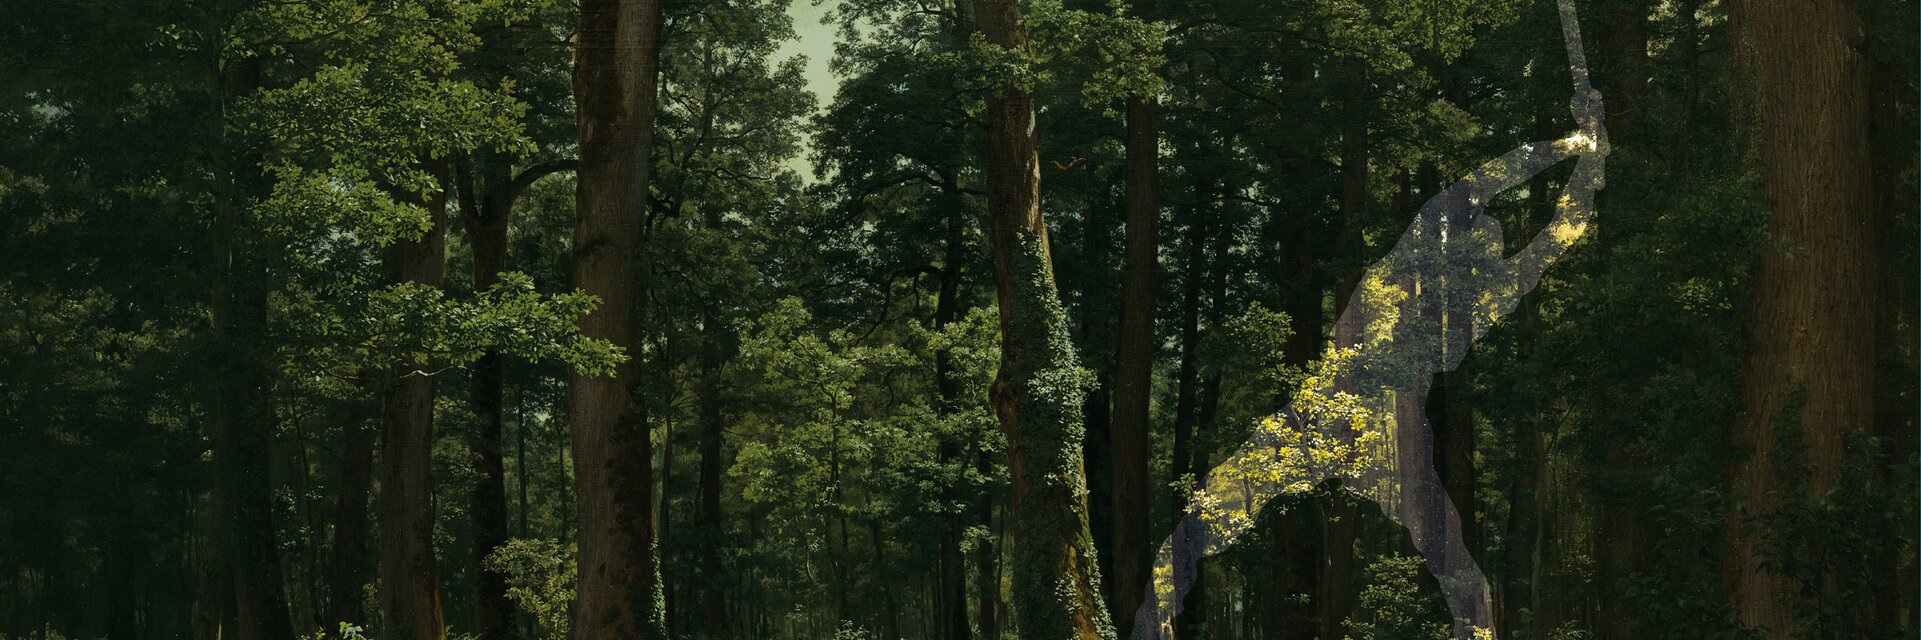 Key-Visual der Ausstellung "Im Wald"